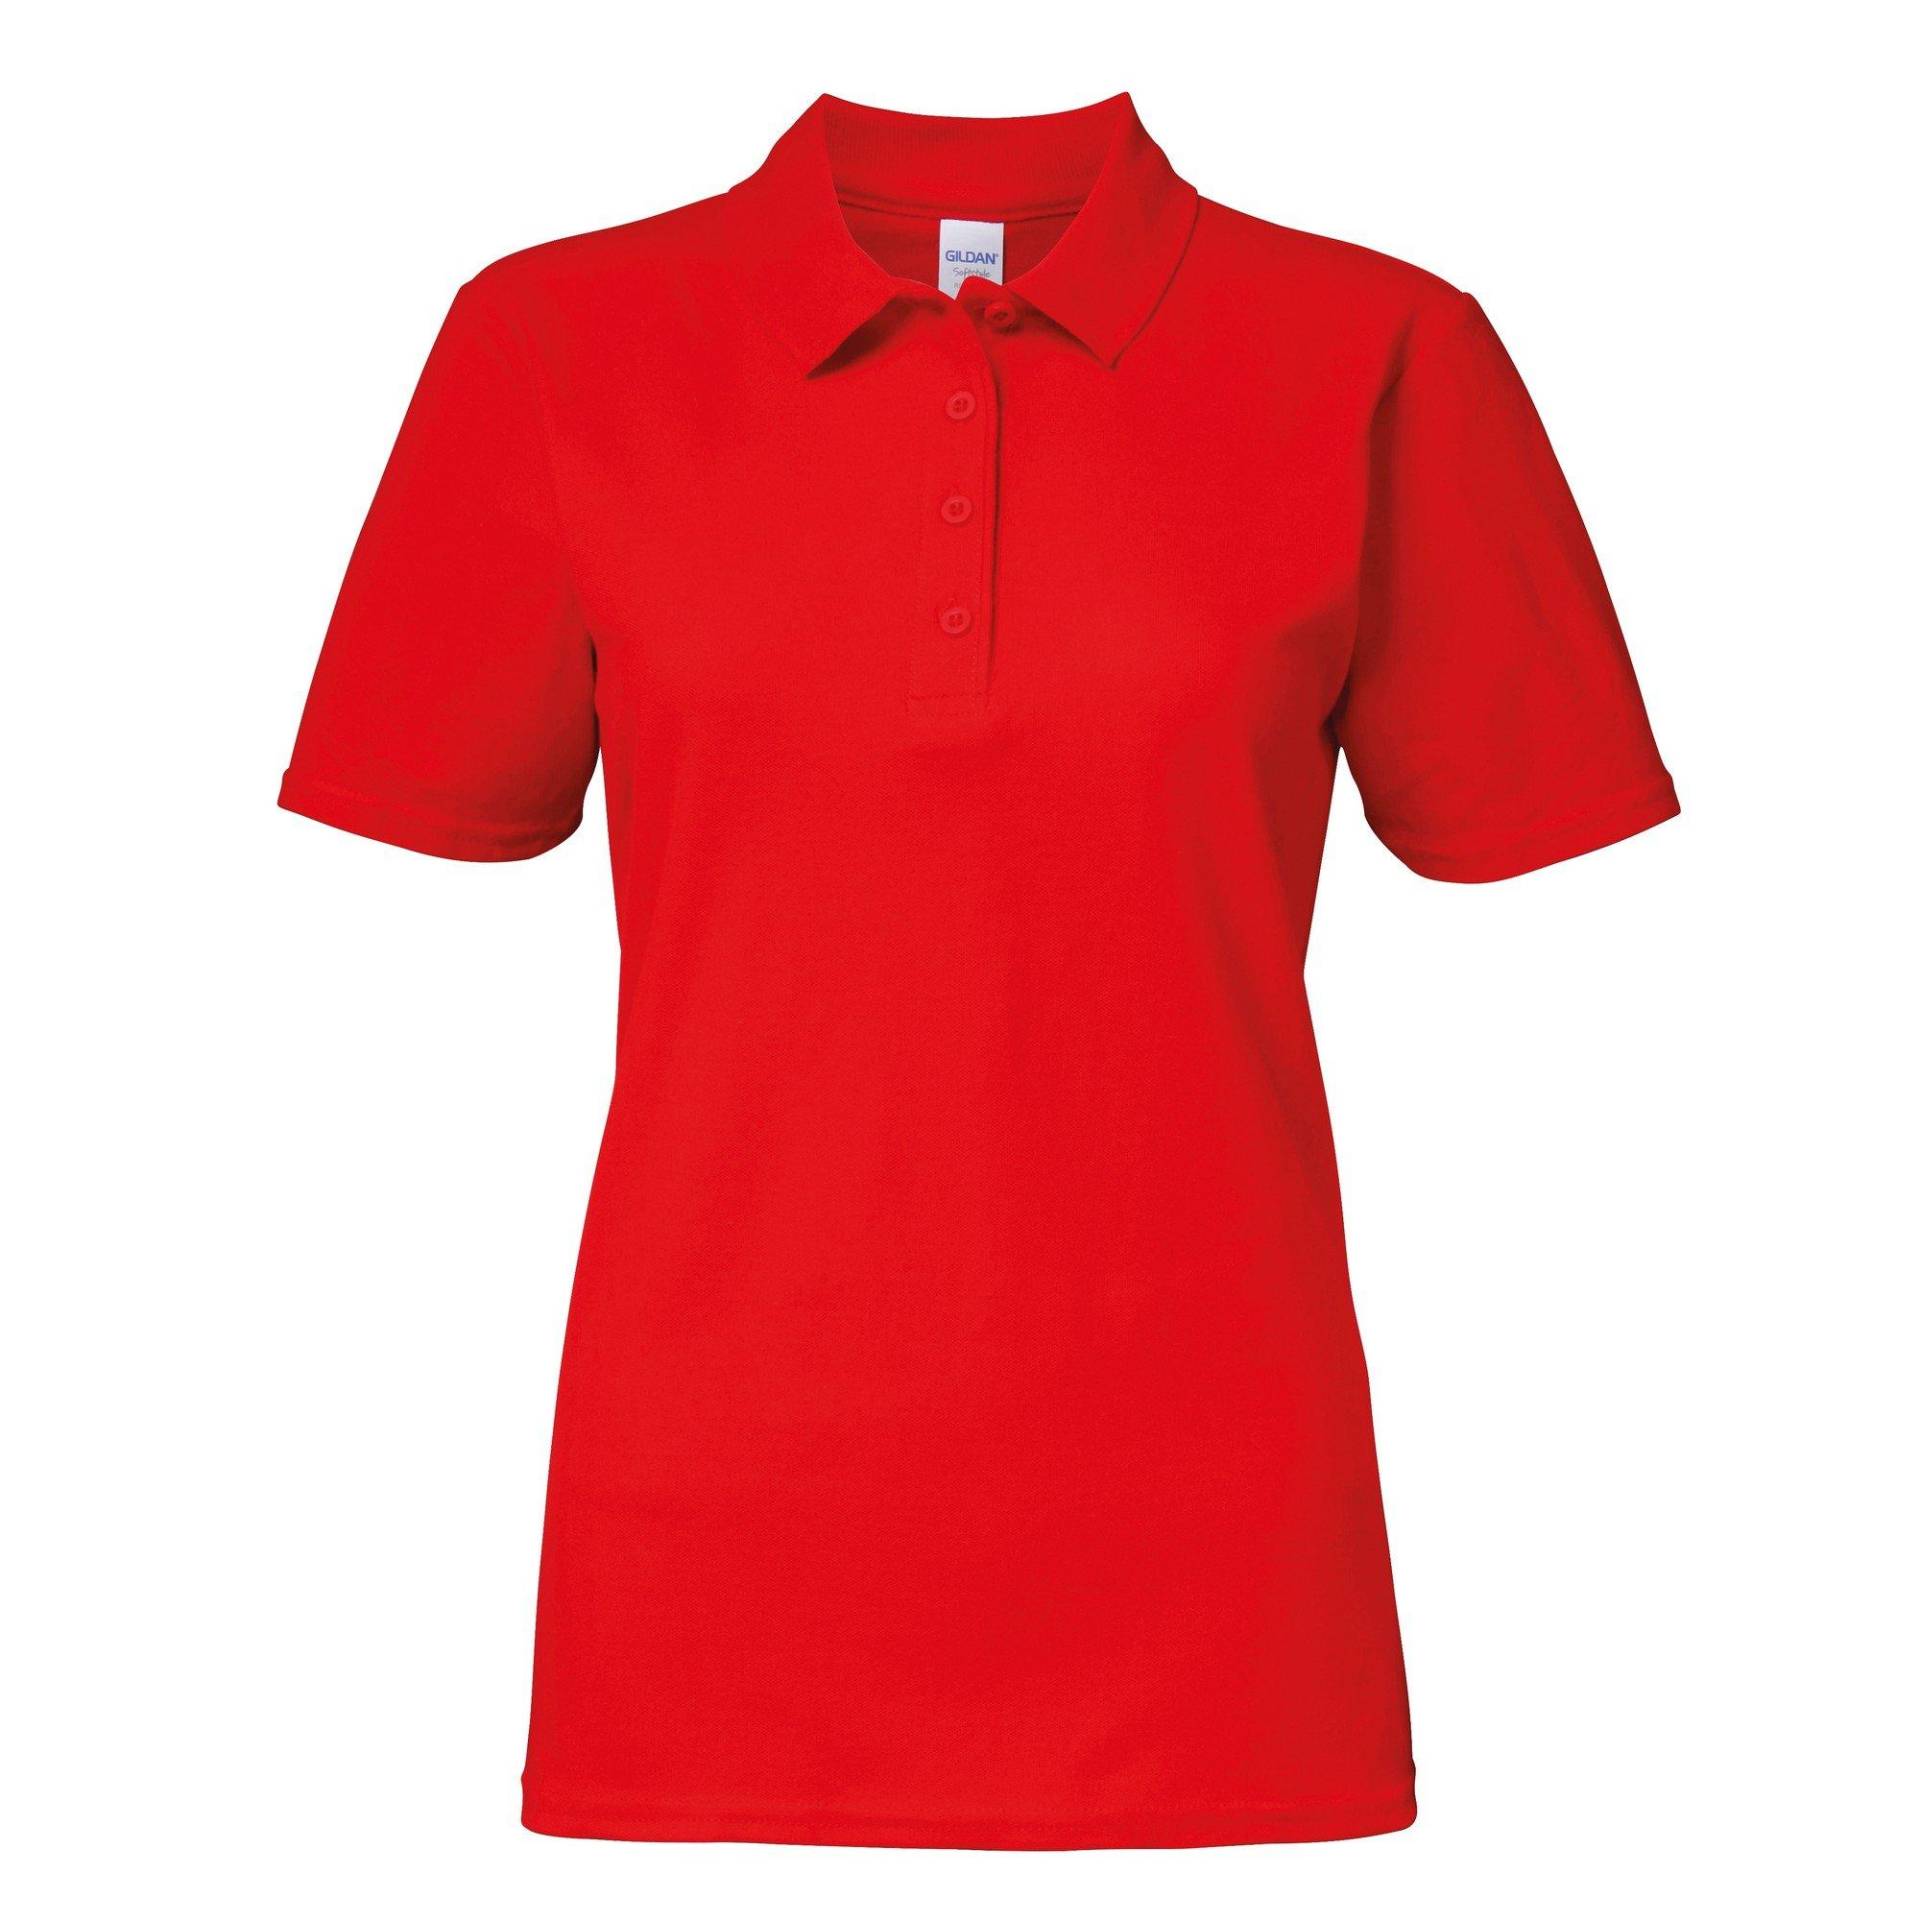 Softstyle Kurzarm Doppel Pique Polo Shirt Damen Rot Bunt XL von Gildan